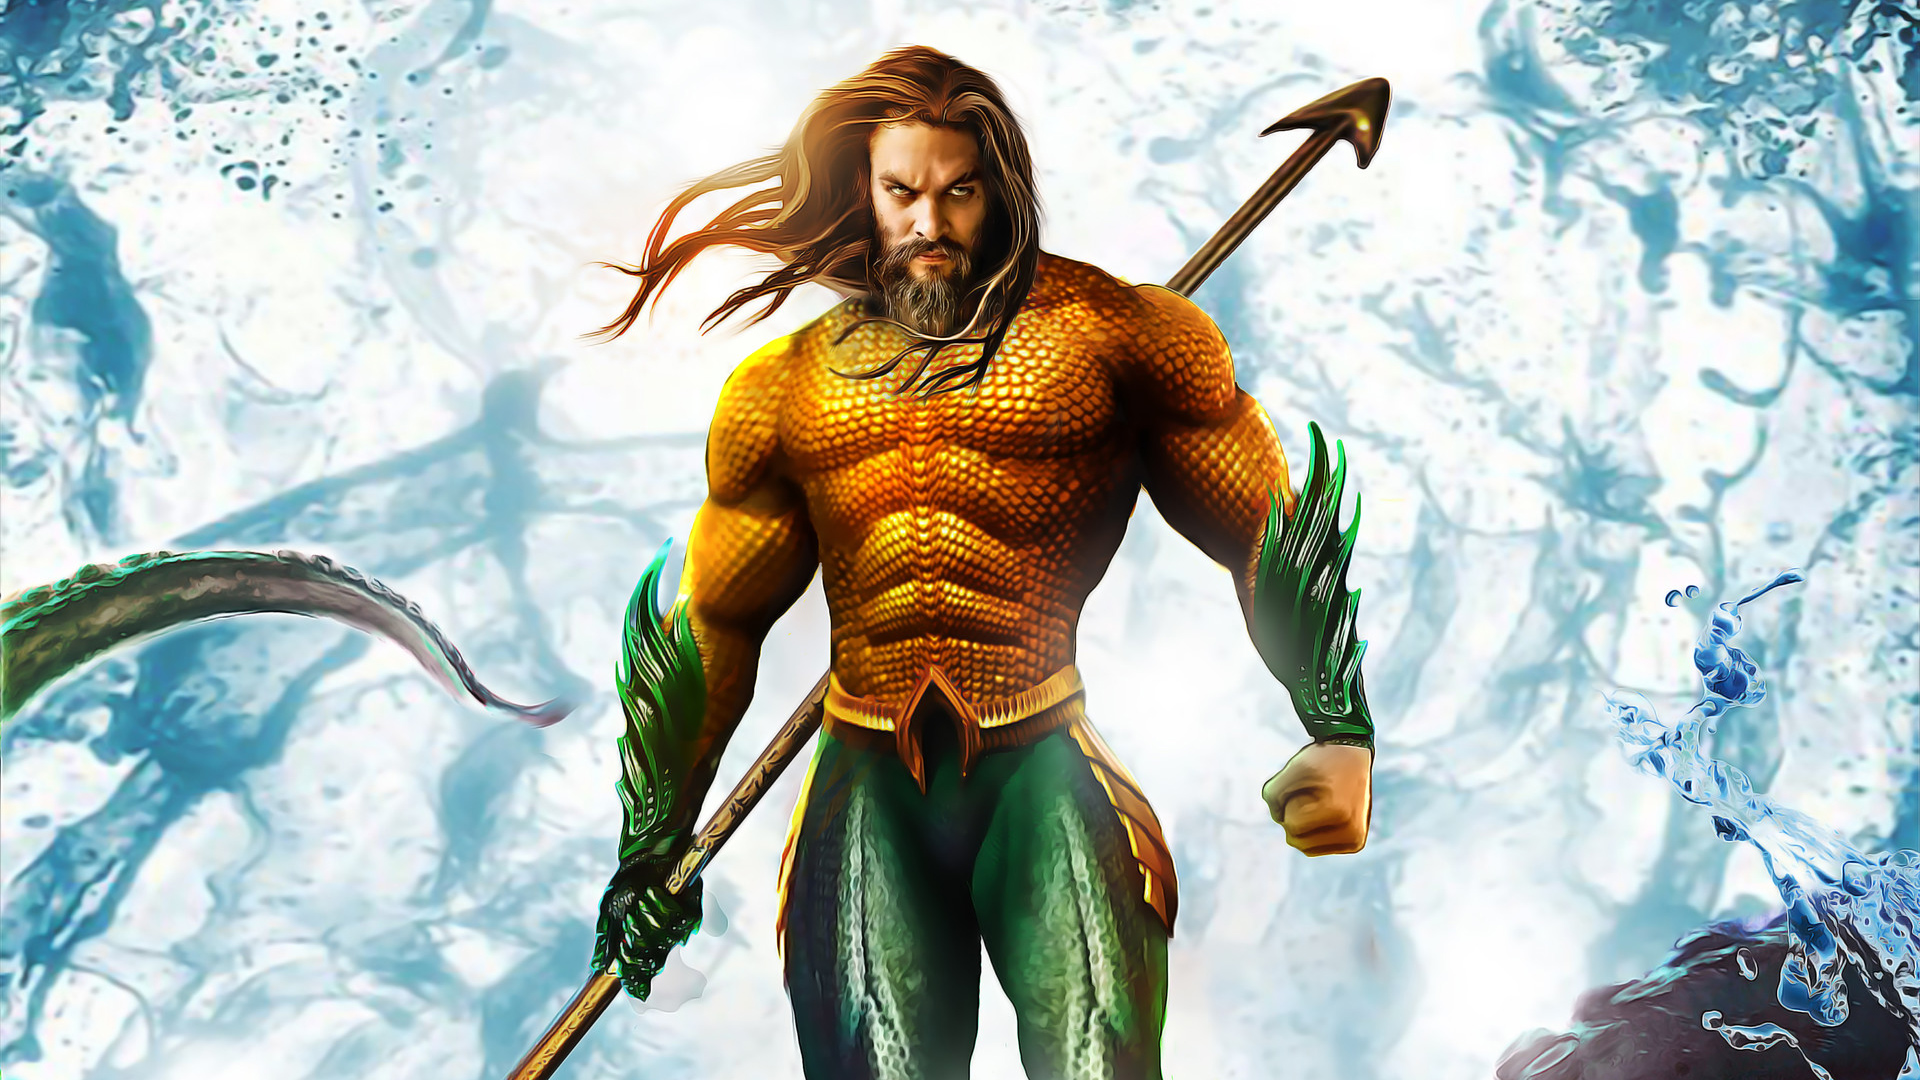 Актер Jason Momoa / Джейсон Момоа в роли Aquaman / Аквамена, постер к одноименному фильму